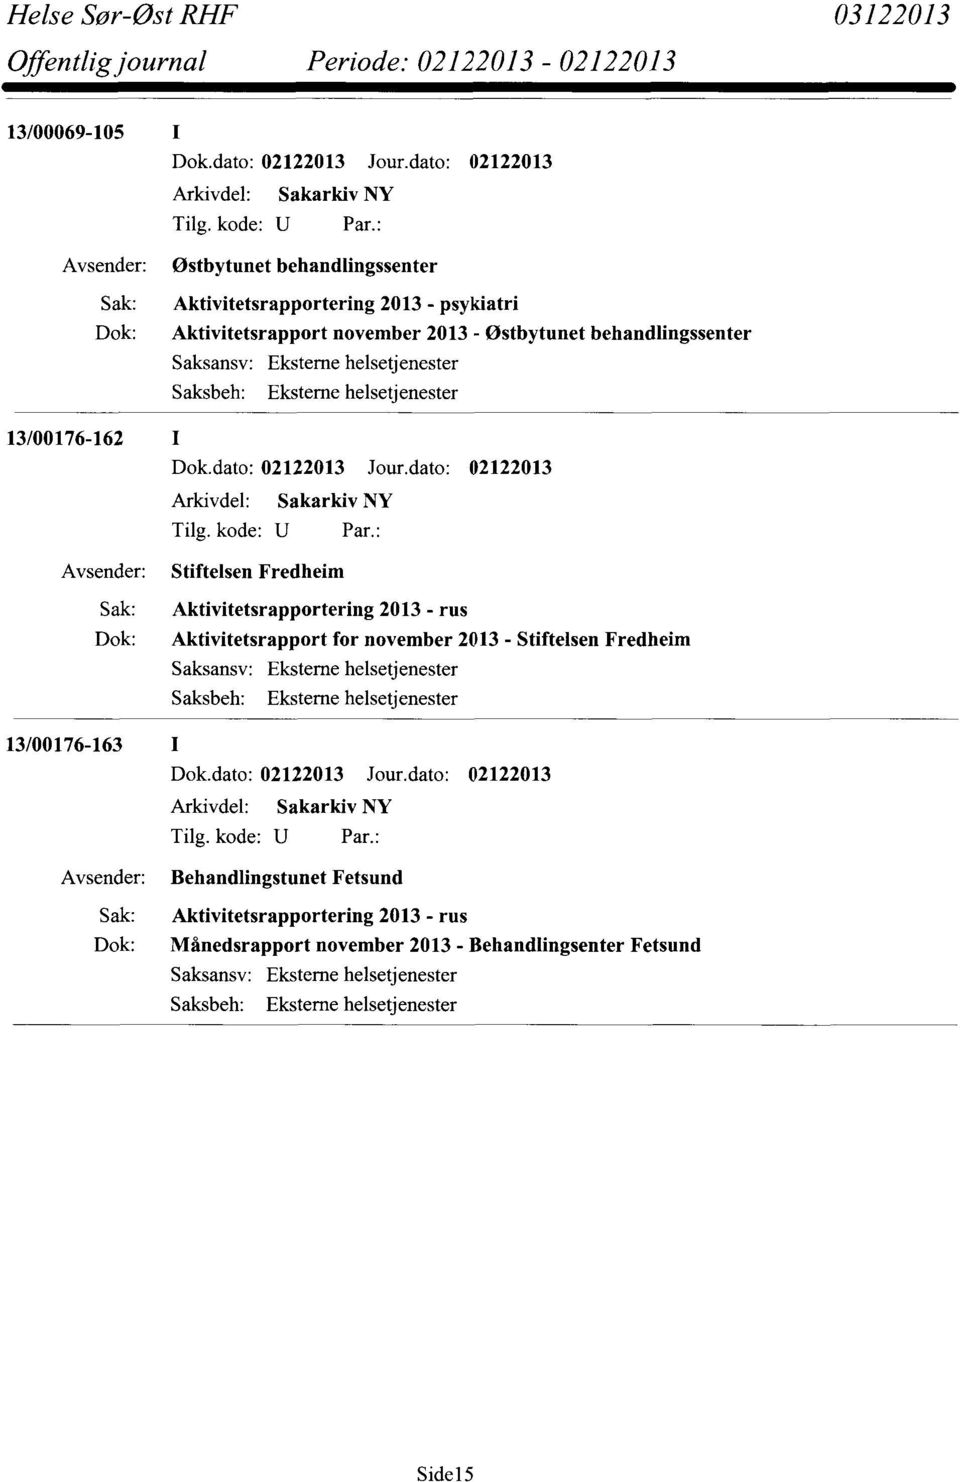 13/00176-163 I Aktivitetsrapportering 2013 - rus Aktivitetsrapport for november 2013 - Stiftelsen Fredheim